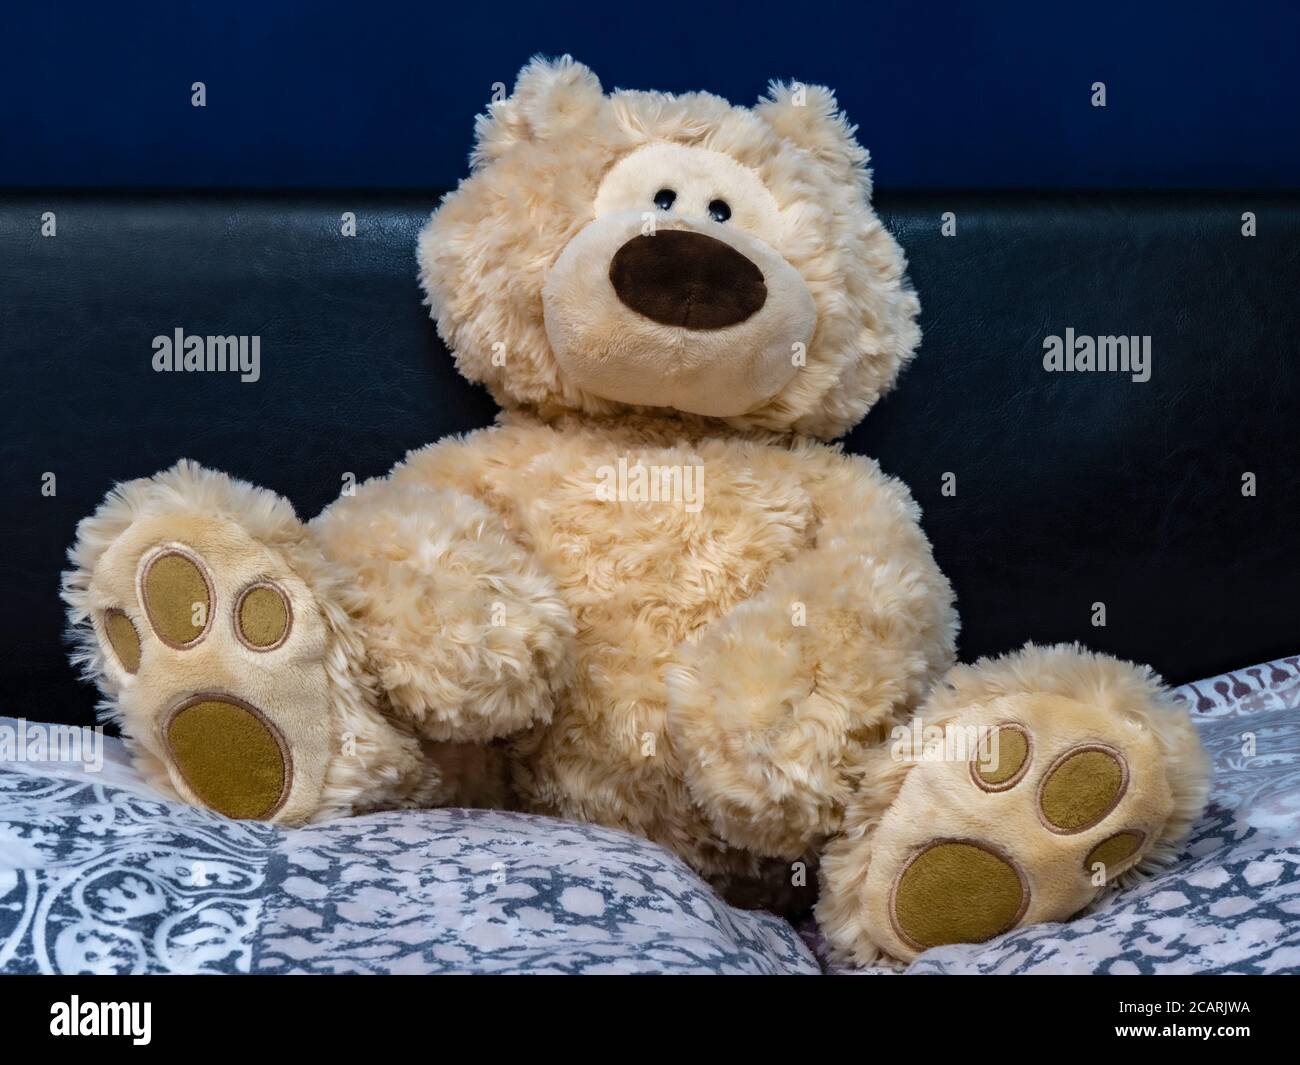 Un orso morbido, coccoloso e peloso, che si rilassa sui cuscini contro la testiera nella camera da letto di un bambino, di fronte alla fotocamera. Foto Stock